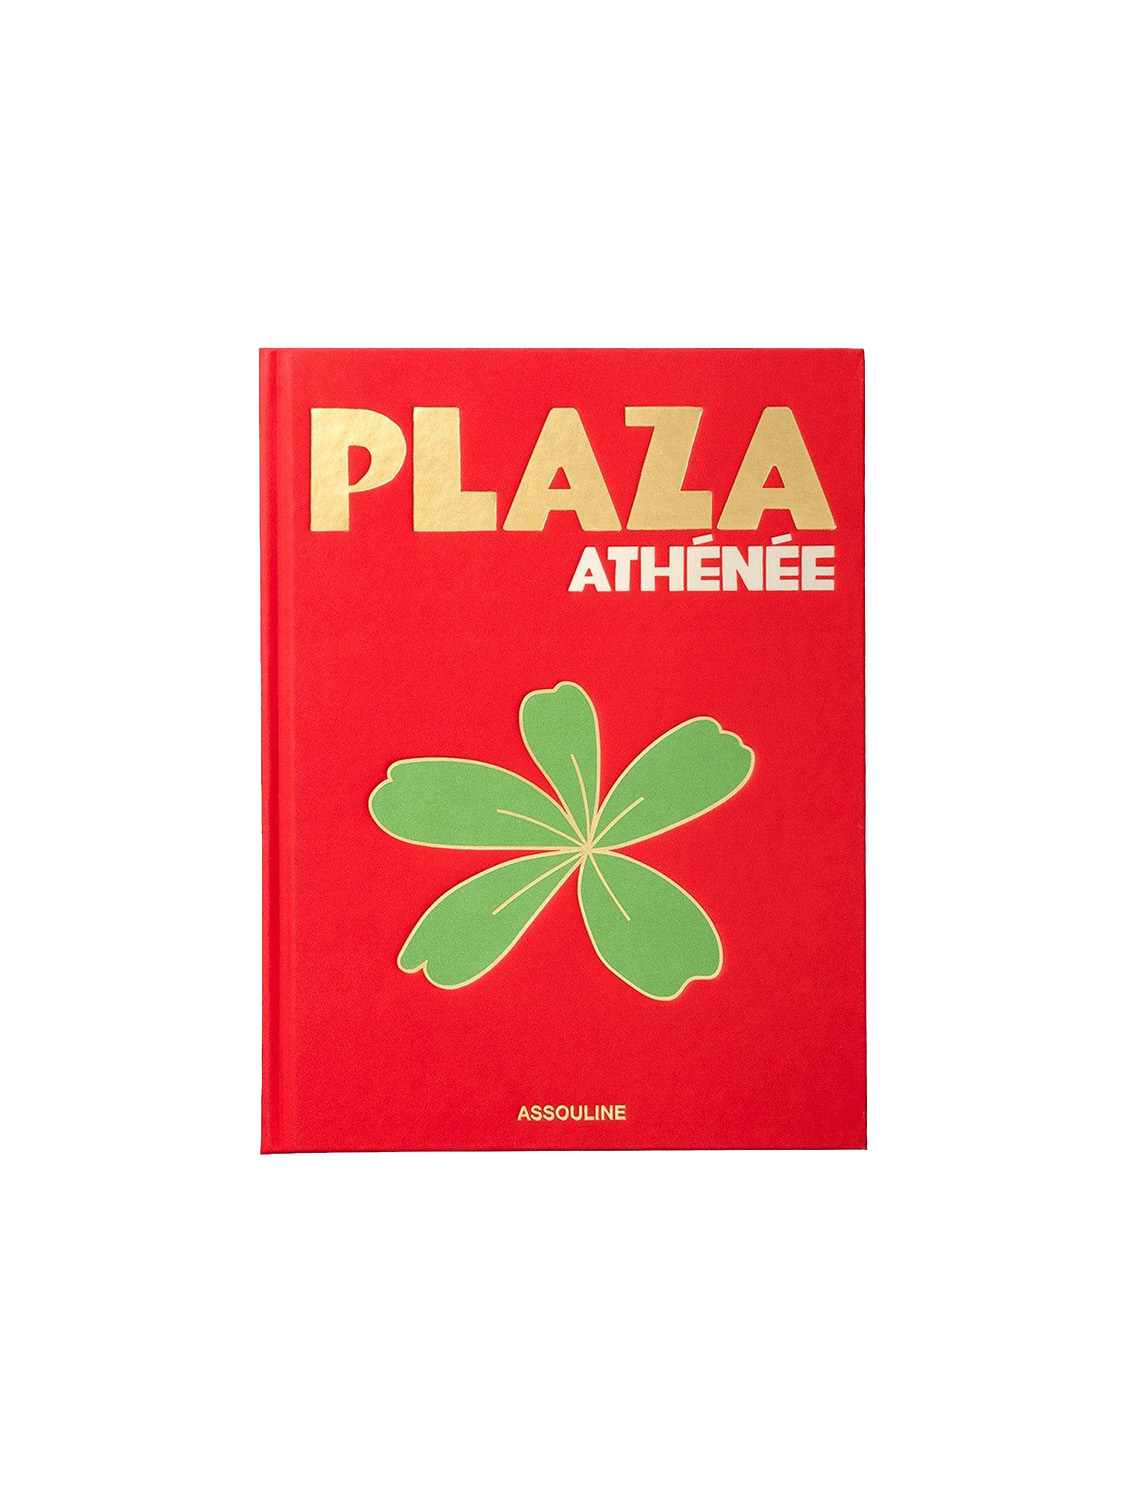 Plazza Athenee